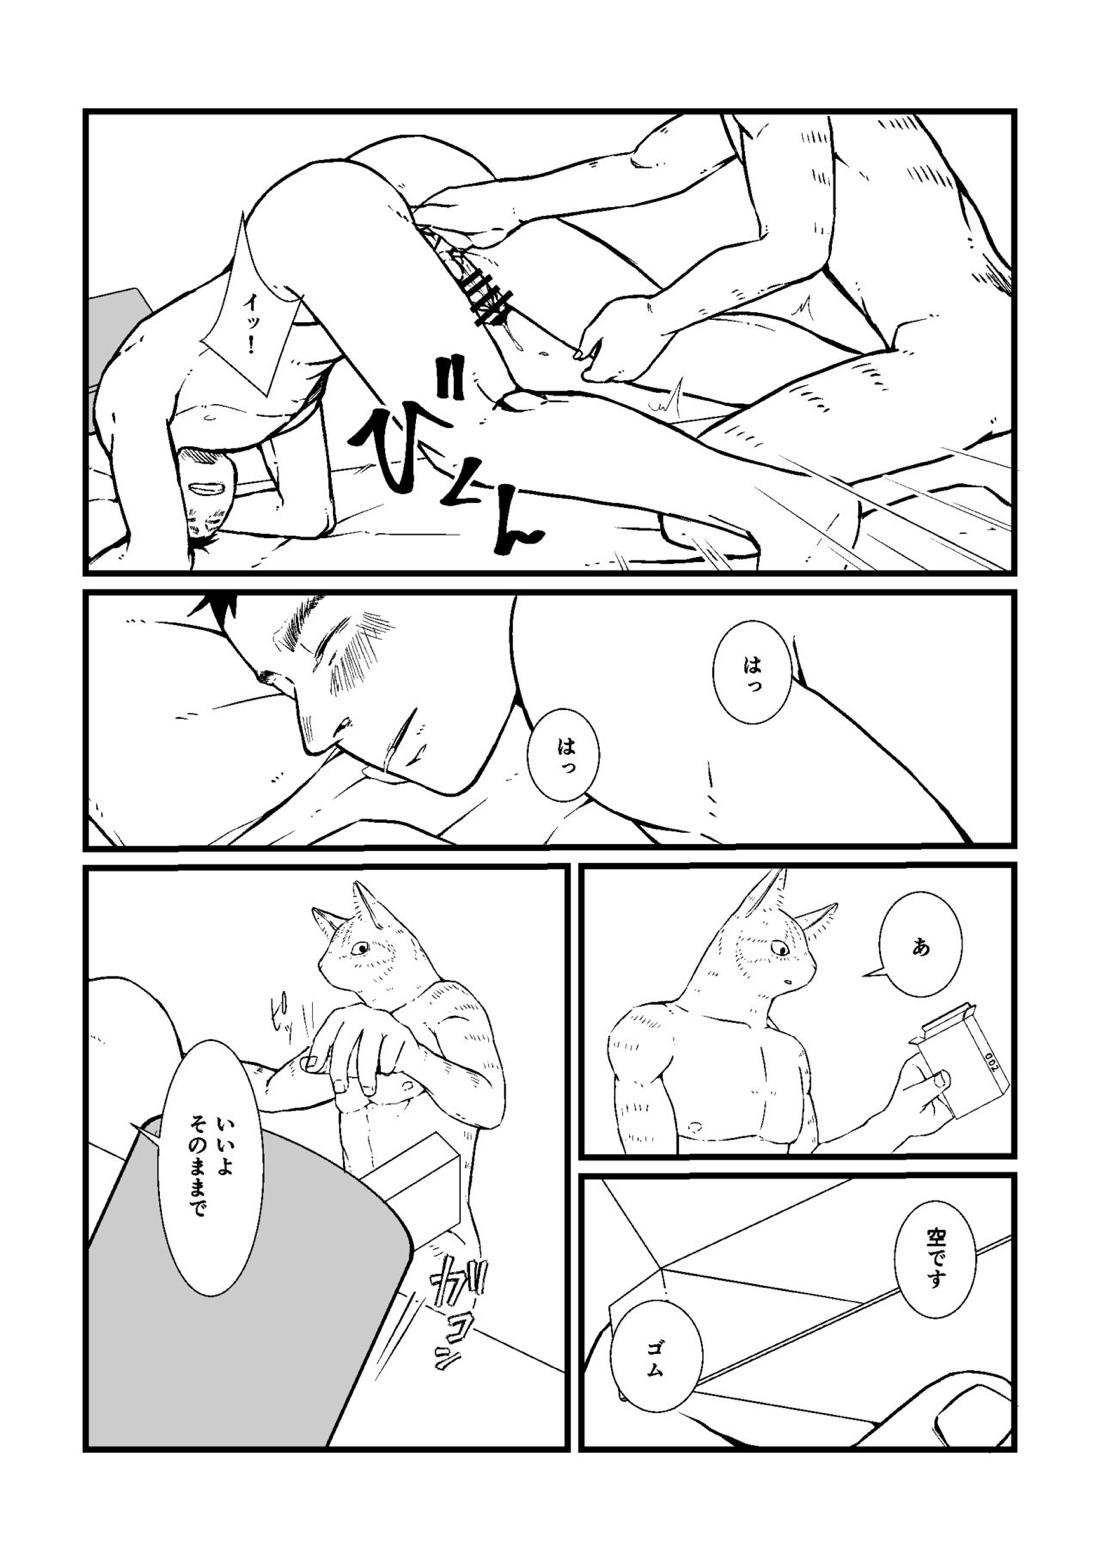 三茶x塚内 R18 漫画 14ページ